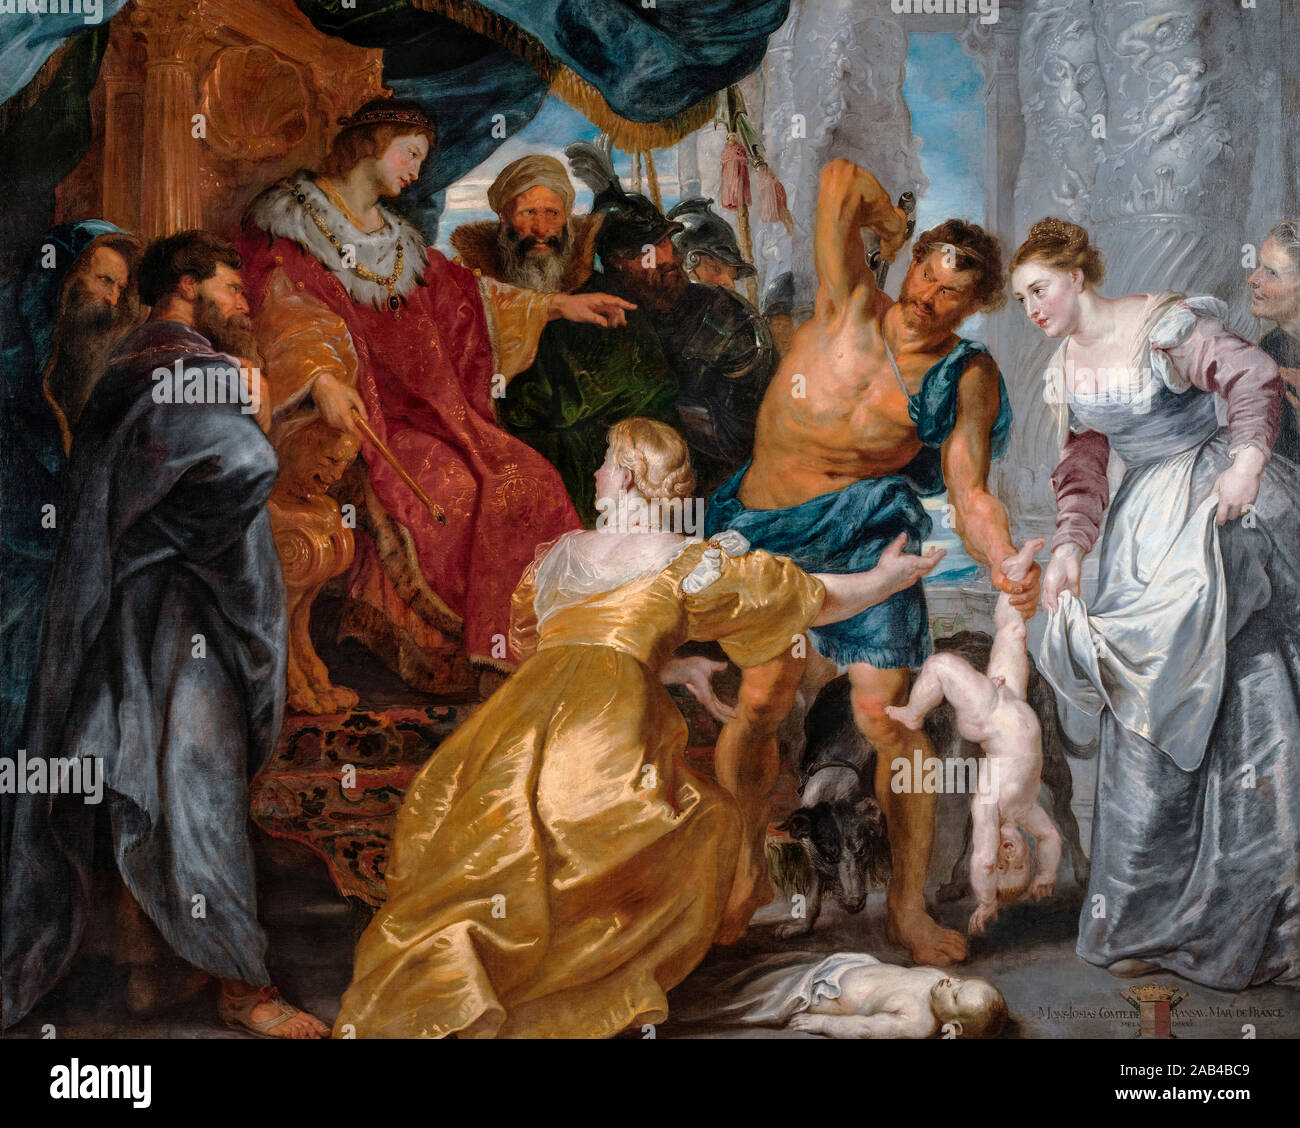 Peter Paul Rubens, El Juicio de Salomón, pintura, 1617 Foto de stock